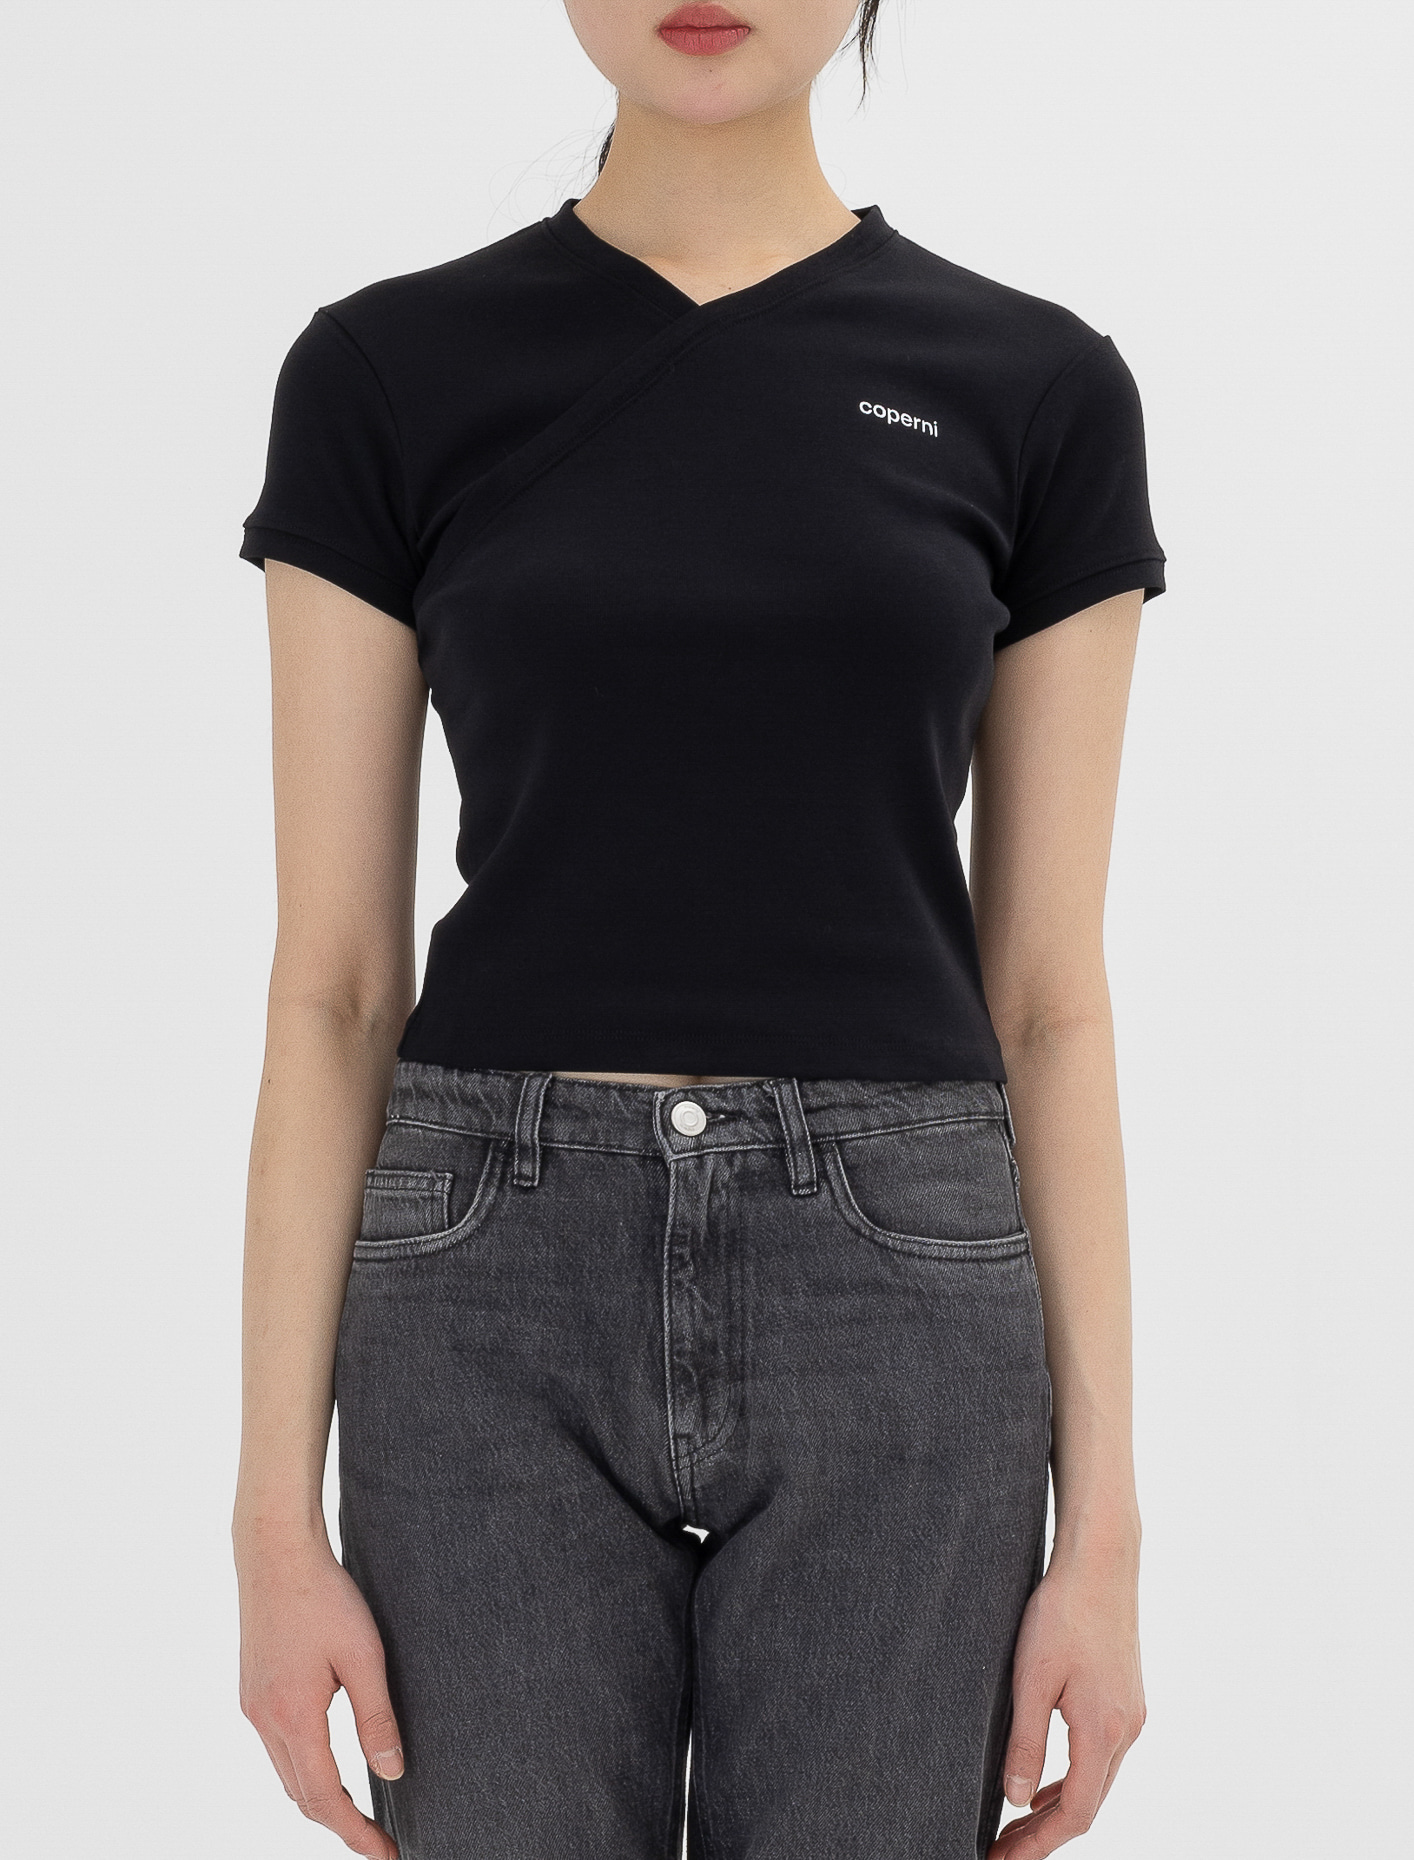 코페르니 브이 넥 라인 티셔츠 블랙